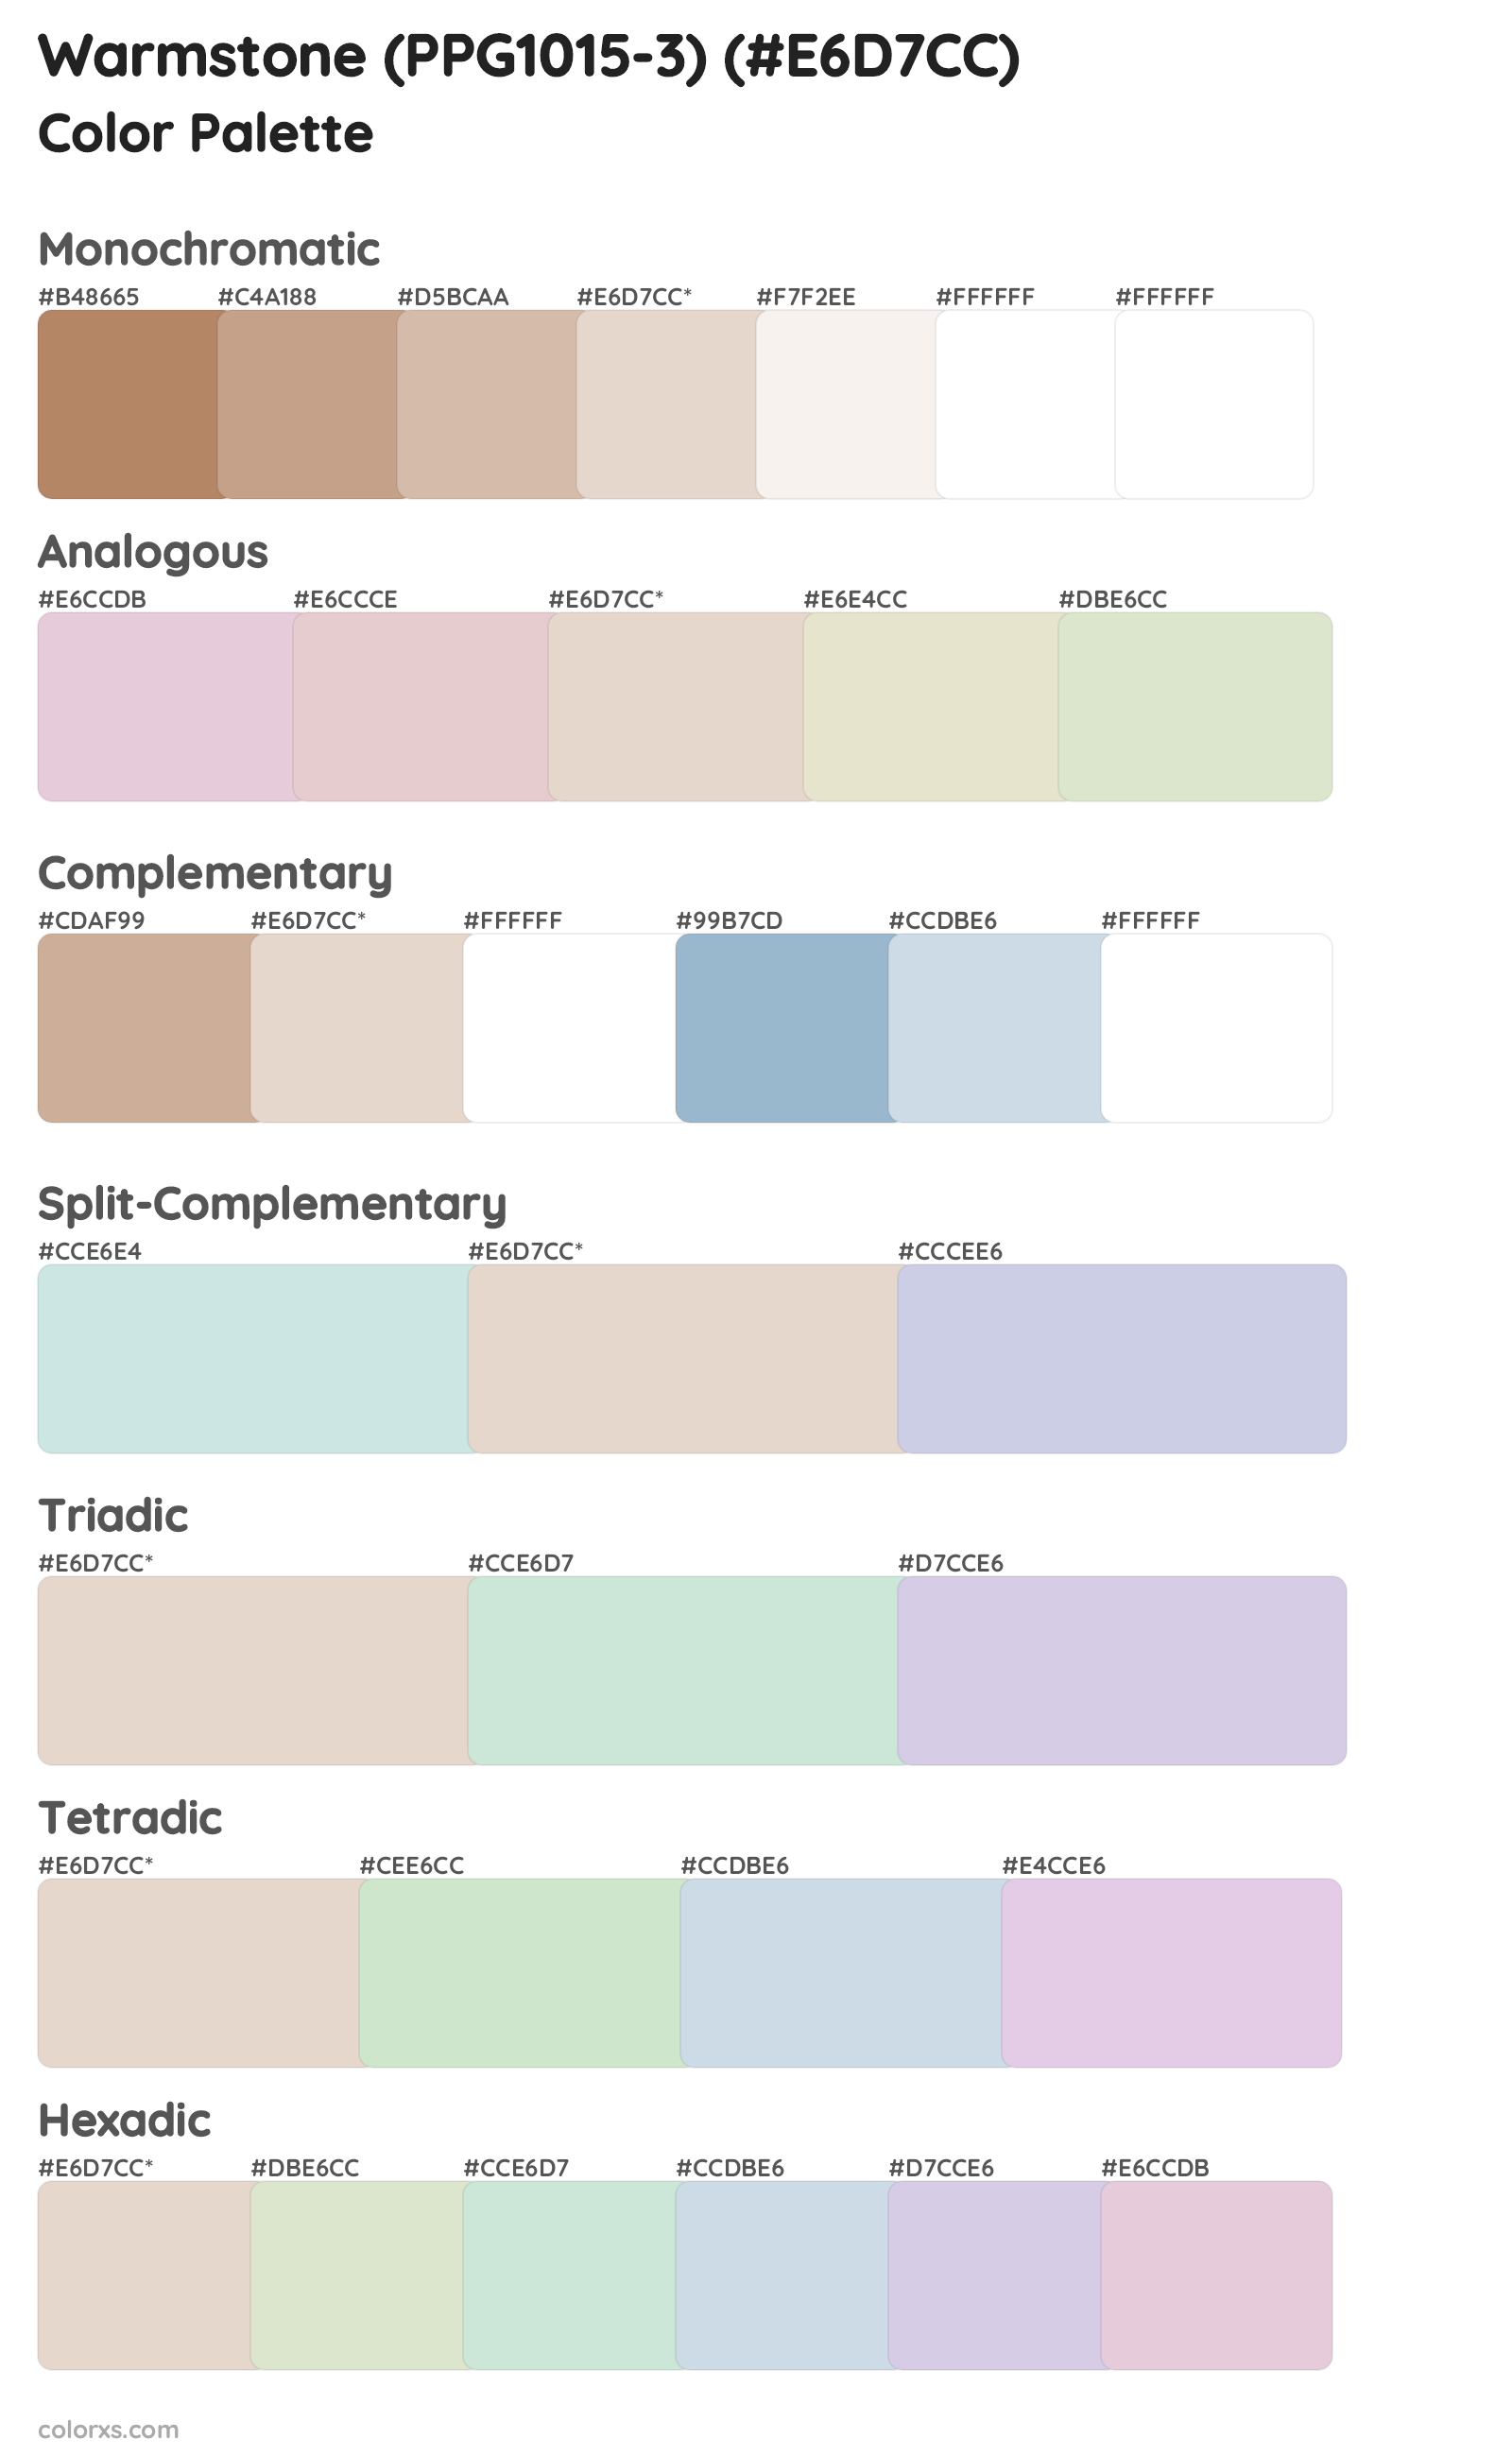 Warmstone (PPG1015-3) Color Scheme Palettes